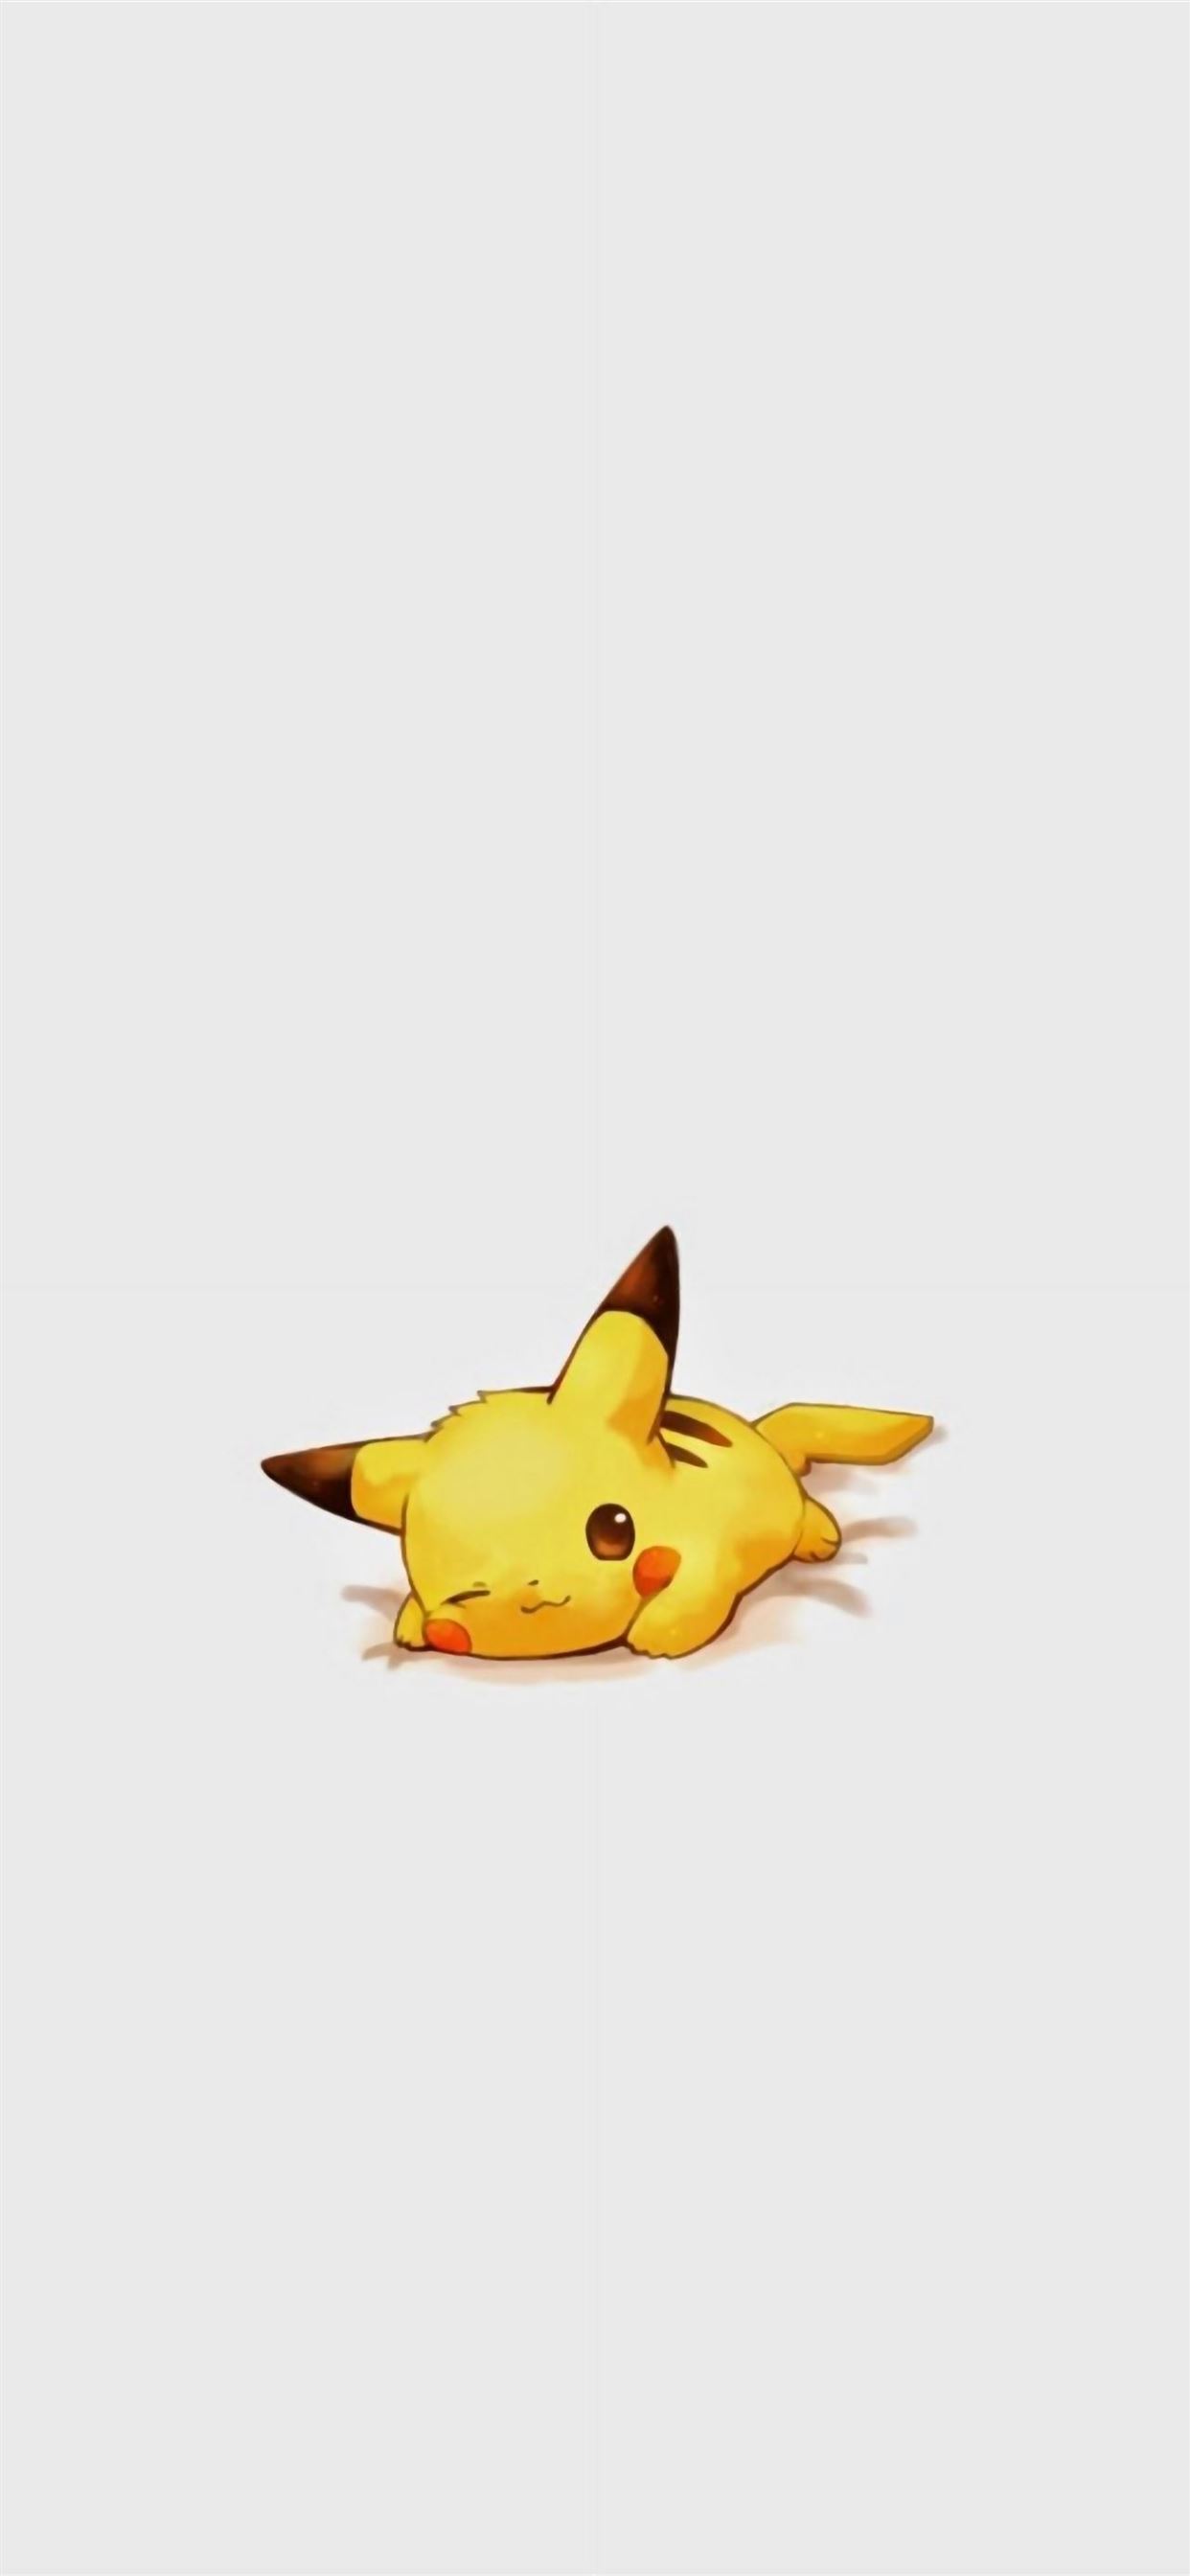 Vào năm nay, các fan hâm mộ của Pokémon Pikachu đã có một lý do để vui mừng hơn bao giờ hết. Hãy chào đón linh vật đáng yêu này đến với thiết bị của bạn với các hình ảnh của nó trên trang điện tử! Bạn sẽ chỉ muốn nhìn chúng mãi mãi!